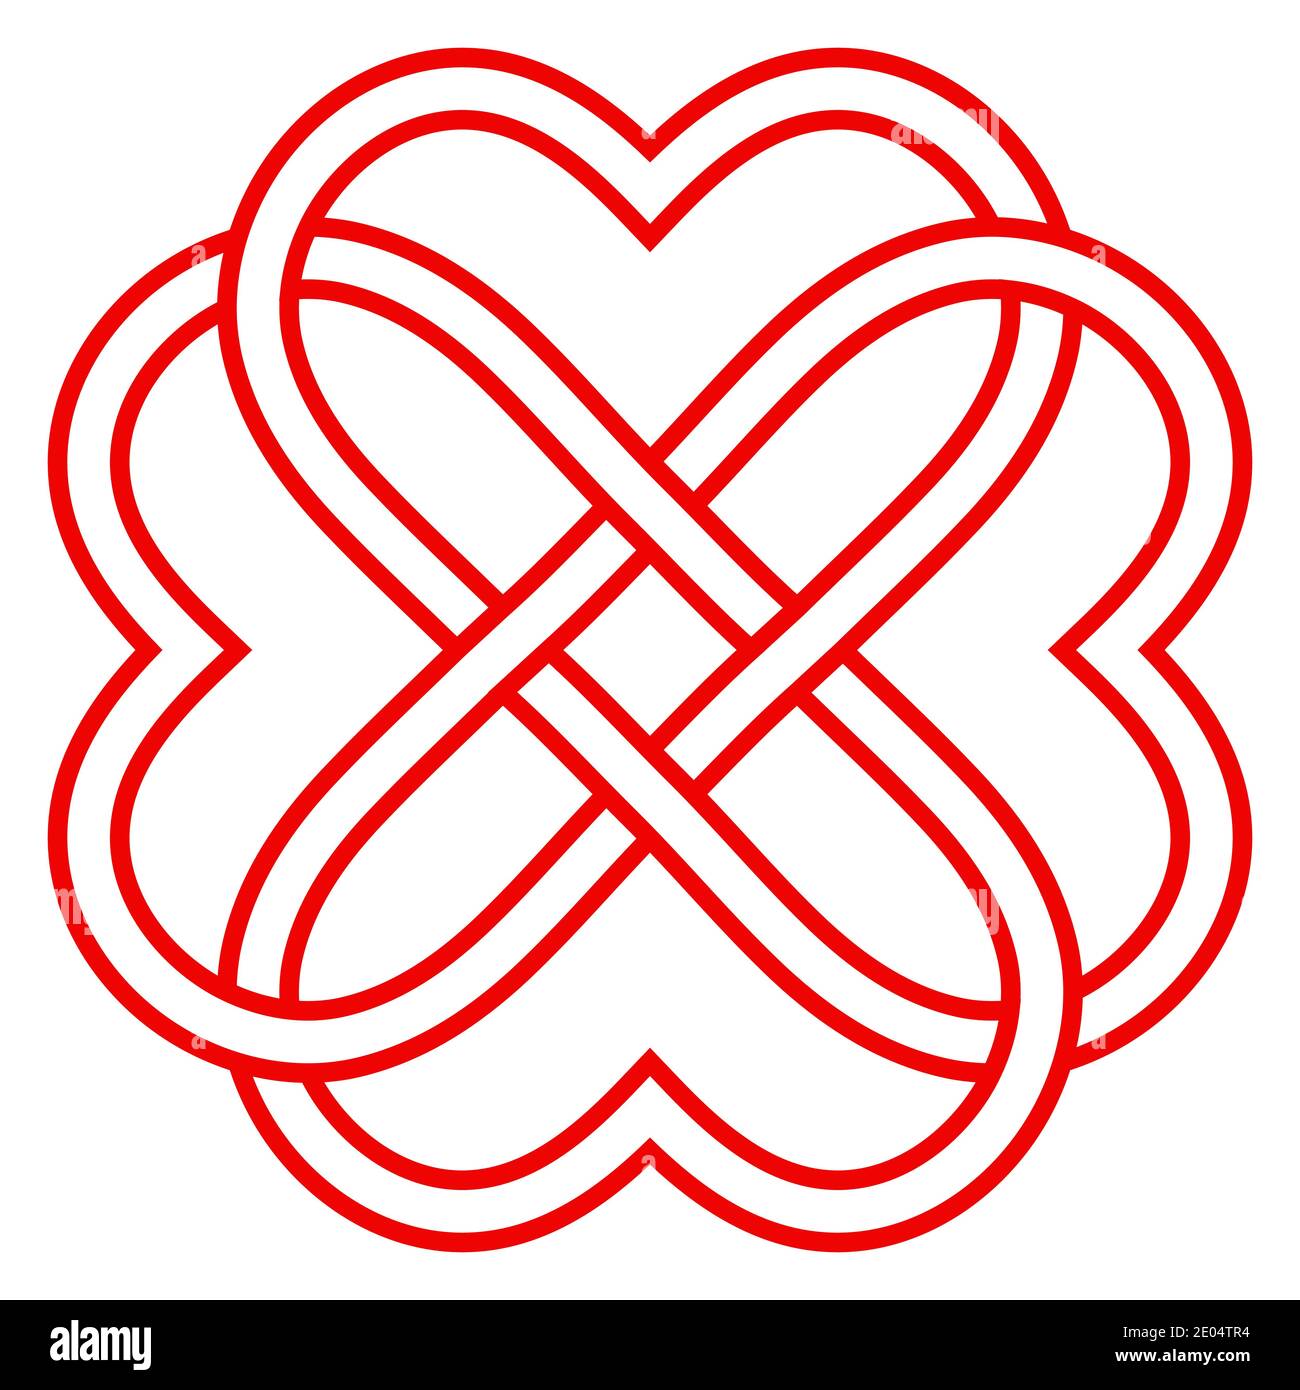 Muster der verflochtenen Herzen, Vektor-Knoten Weberei von Herzen Symbol ewige Liebe und Freundschaft Stock Vektor